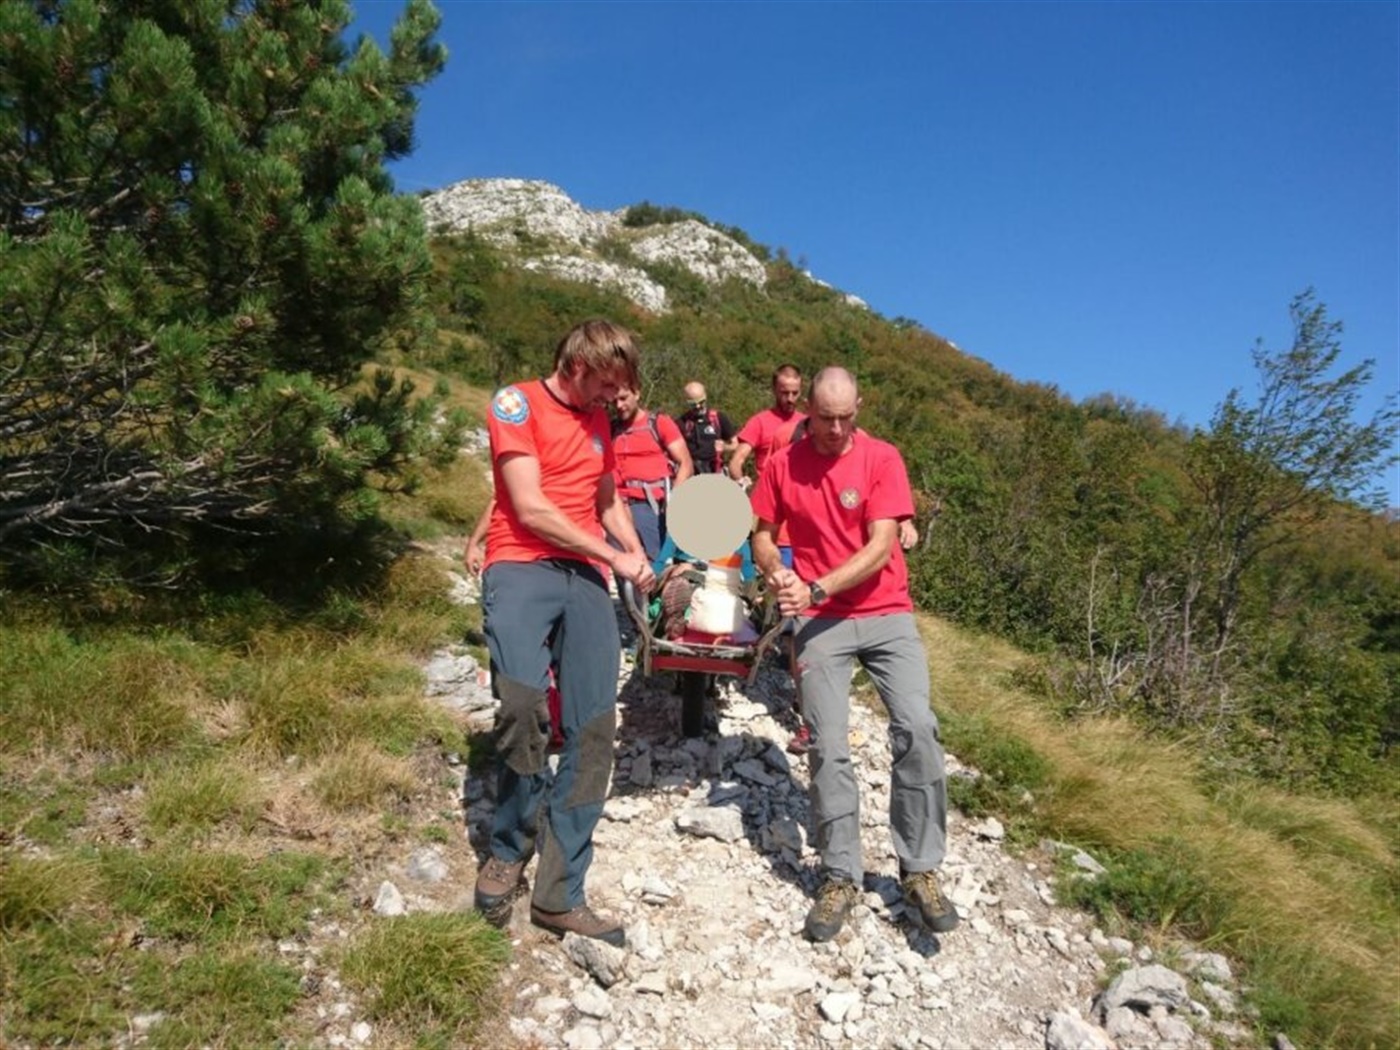 HGSS stanica Rijeka tijekom ponedjeljka i utorka u akcijama spašavanja planinara